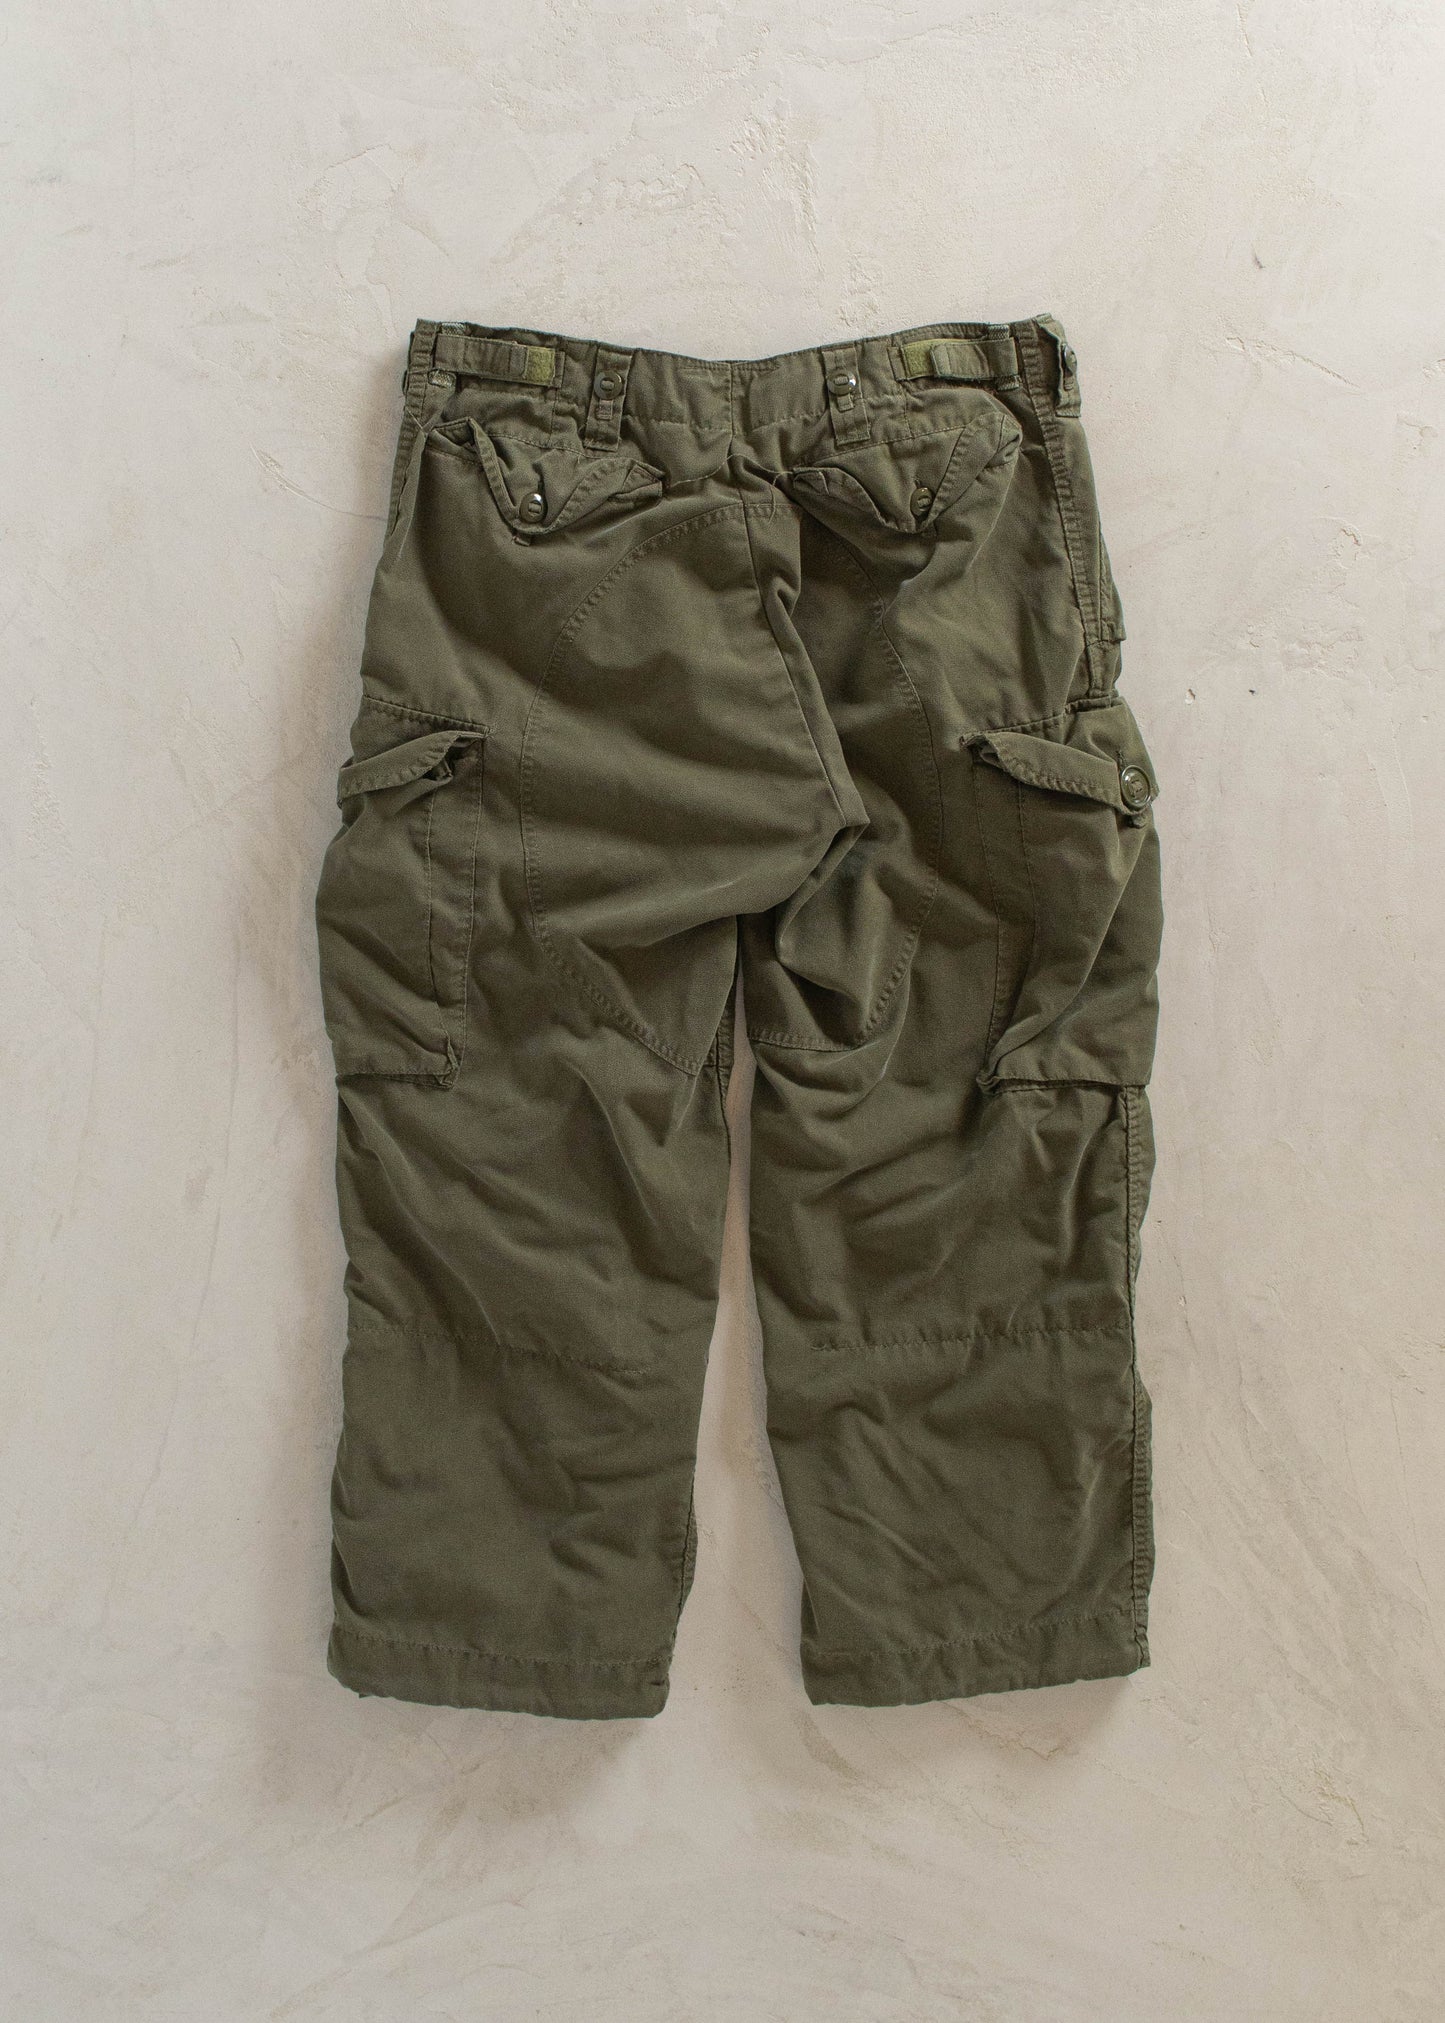 1980s MKIII Military Combat Cargo Pants Size Women's 34 Men's 36